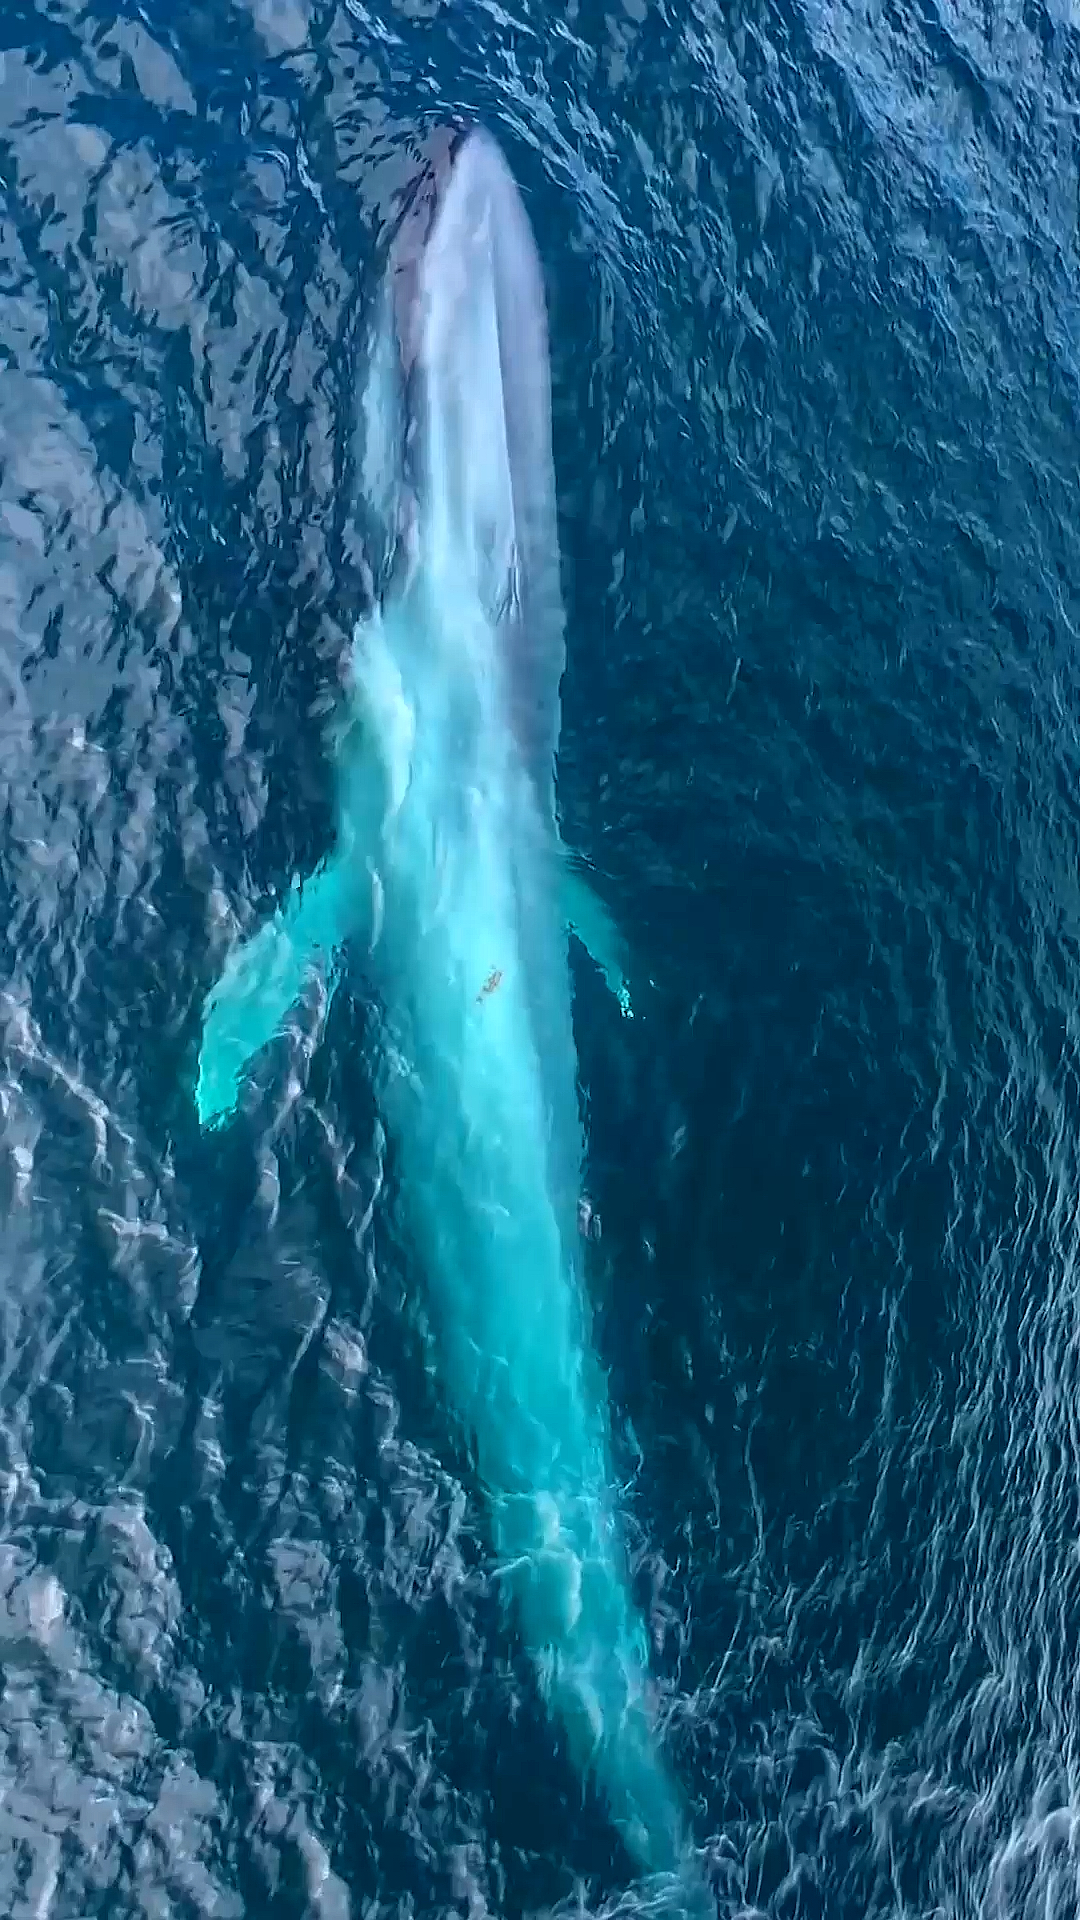 蓝鲸#深海孤寂蓝鲸鲸声悠远治愈